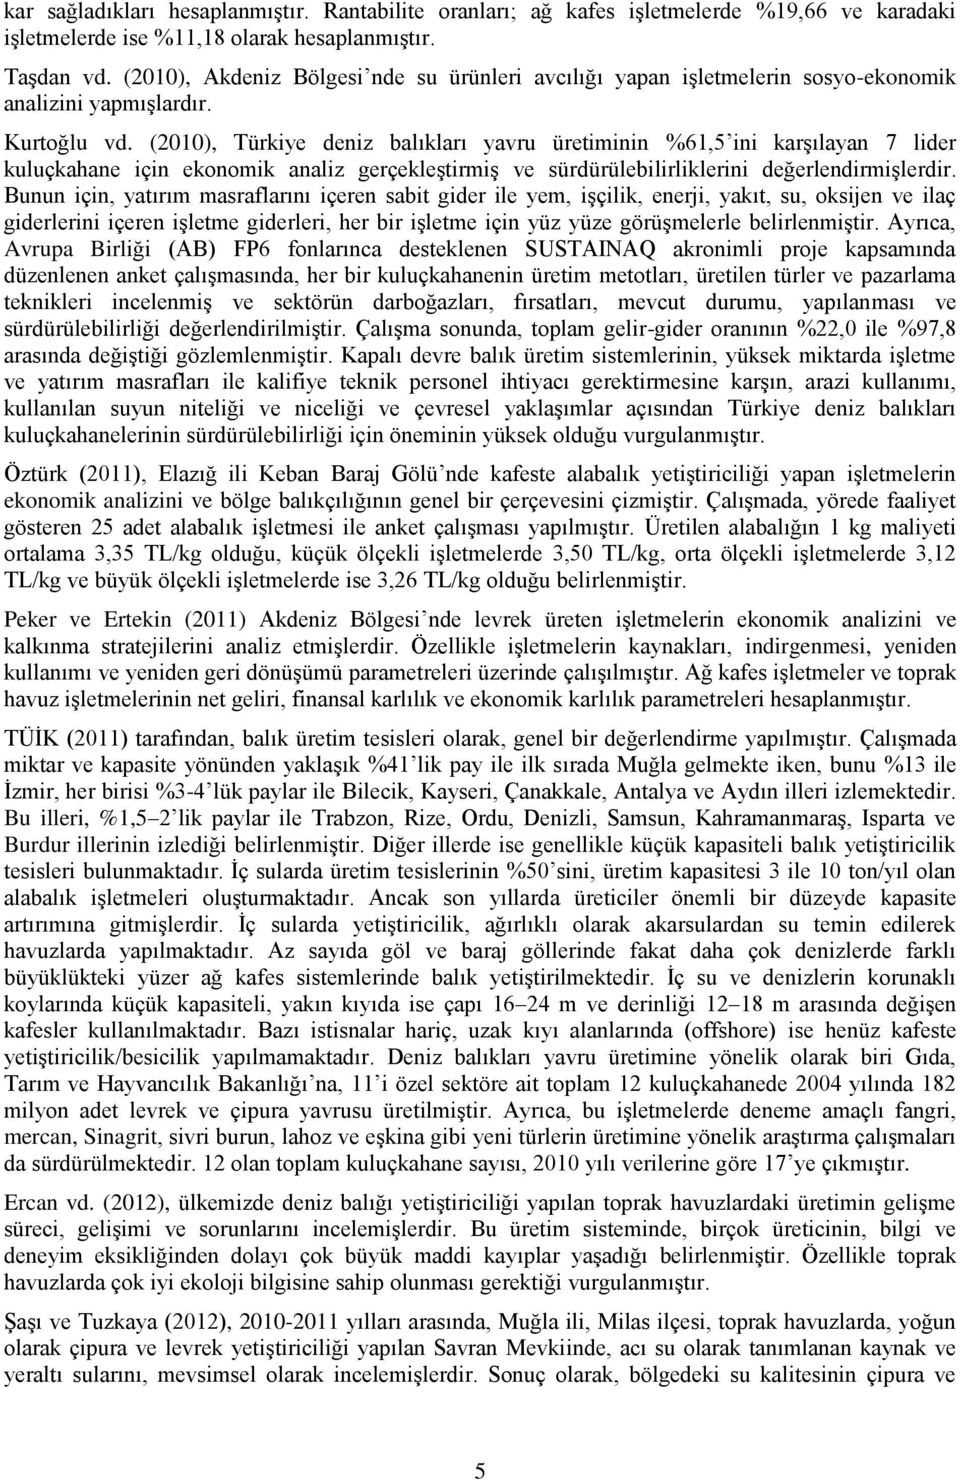 (2010), Türkiye deniz balıkları yavru üretiminin %61,5 ini karşılayan 7 lider kuluçkahane için ekonomik analiz gerçekleştirmiş ve sürdürülebilirliklerini değerlendirmişlerdir.